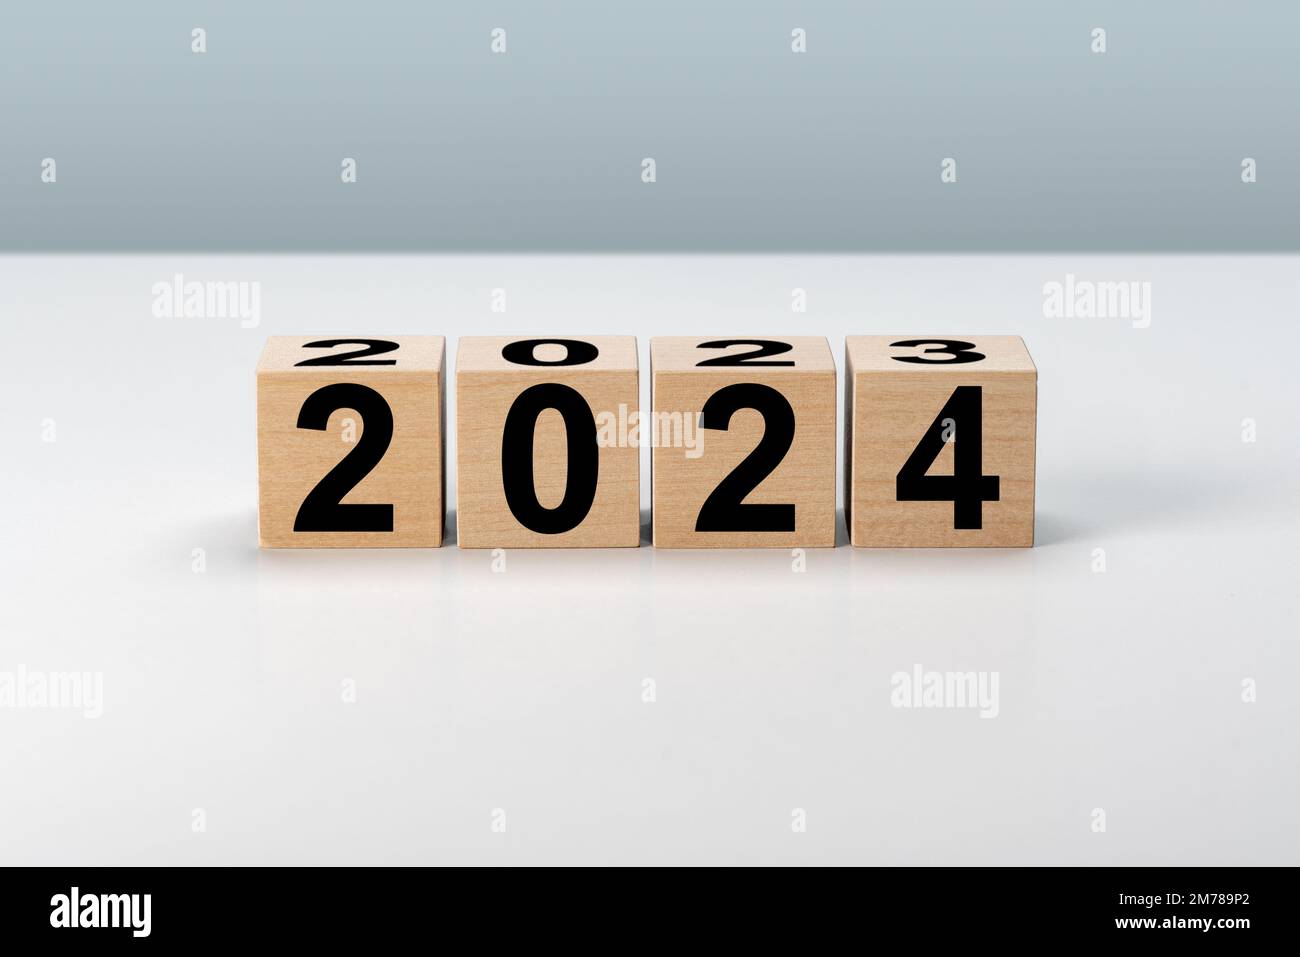 Nouvelle année 2024. Blocs de bois 2024 sur fond gris neutre. 2023 à 2024 sur un cube en bois pour la préparation du changement de nouvelle année et pour commencer de nouvelles affaires Banque D'Images